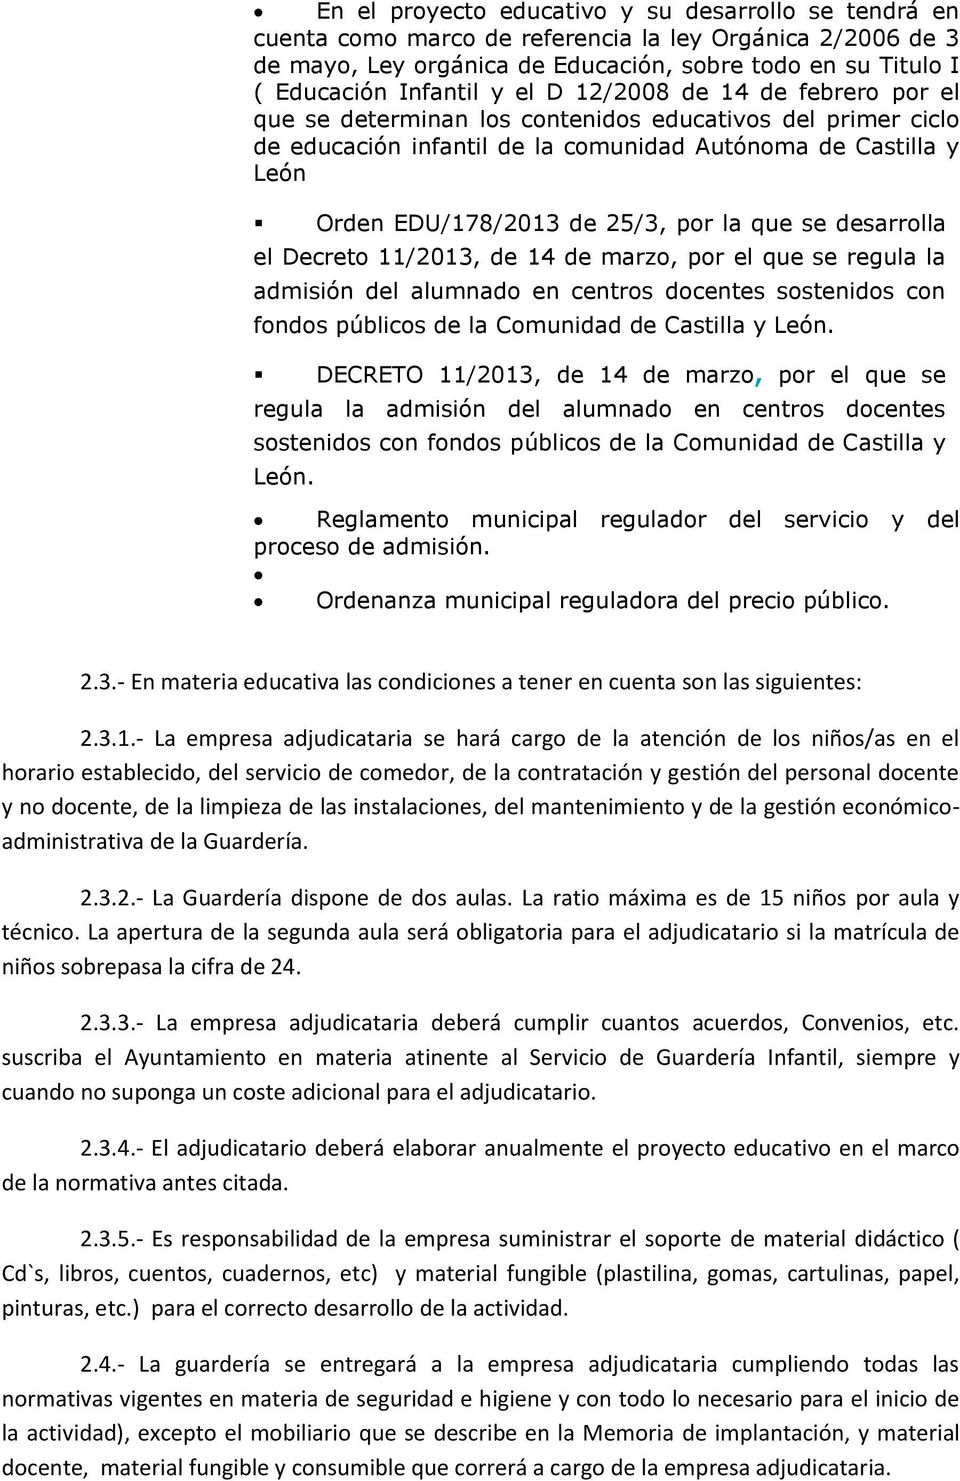 que se desarrolla el Decreto 11/2013, de 14 de marzo, por el que se regula la admisión del alumnado en centros docentes sostenidos con fondos públicos de la Comunidad de Castilla y León.